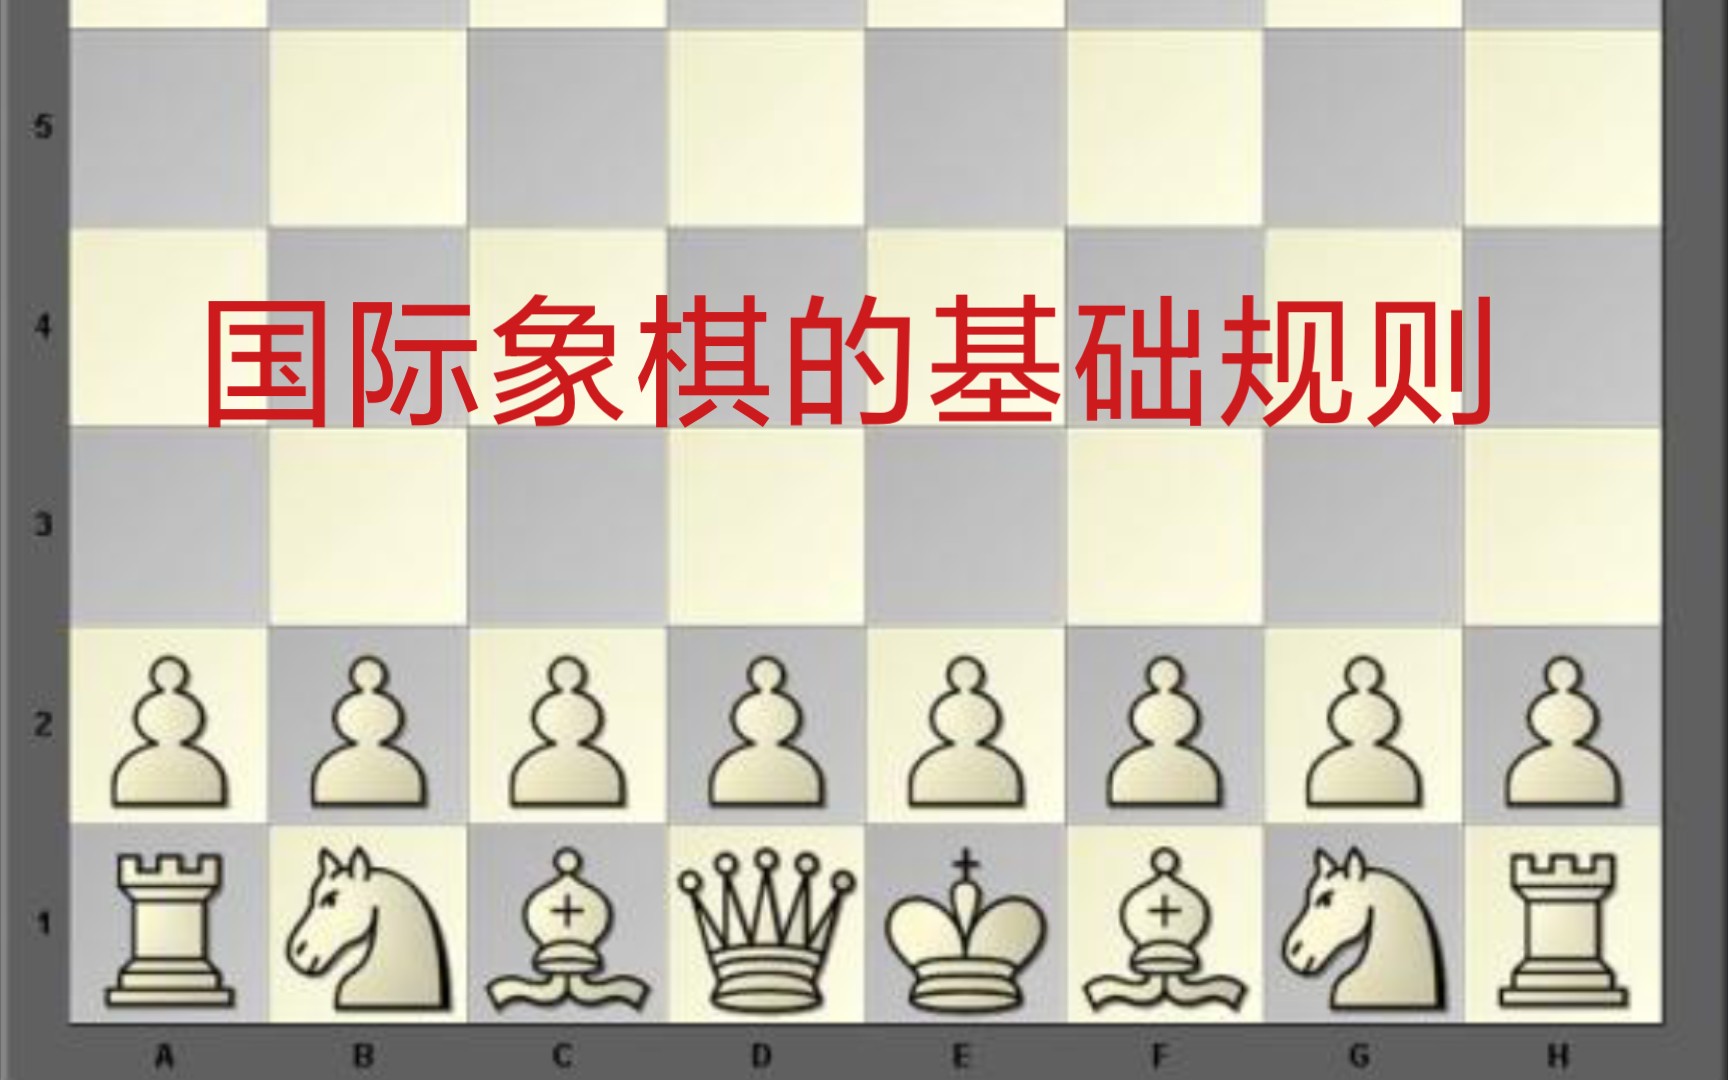 国际象棋的基本规则